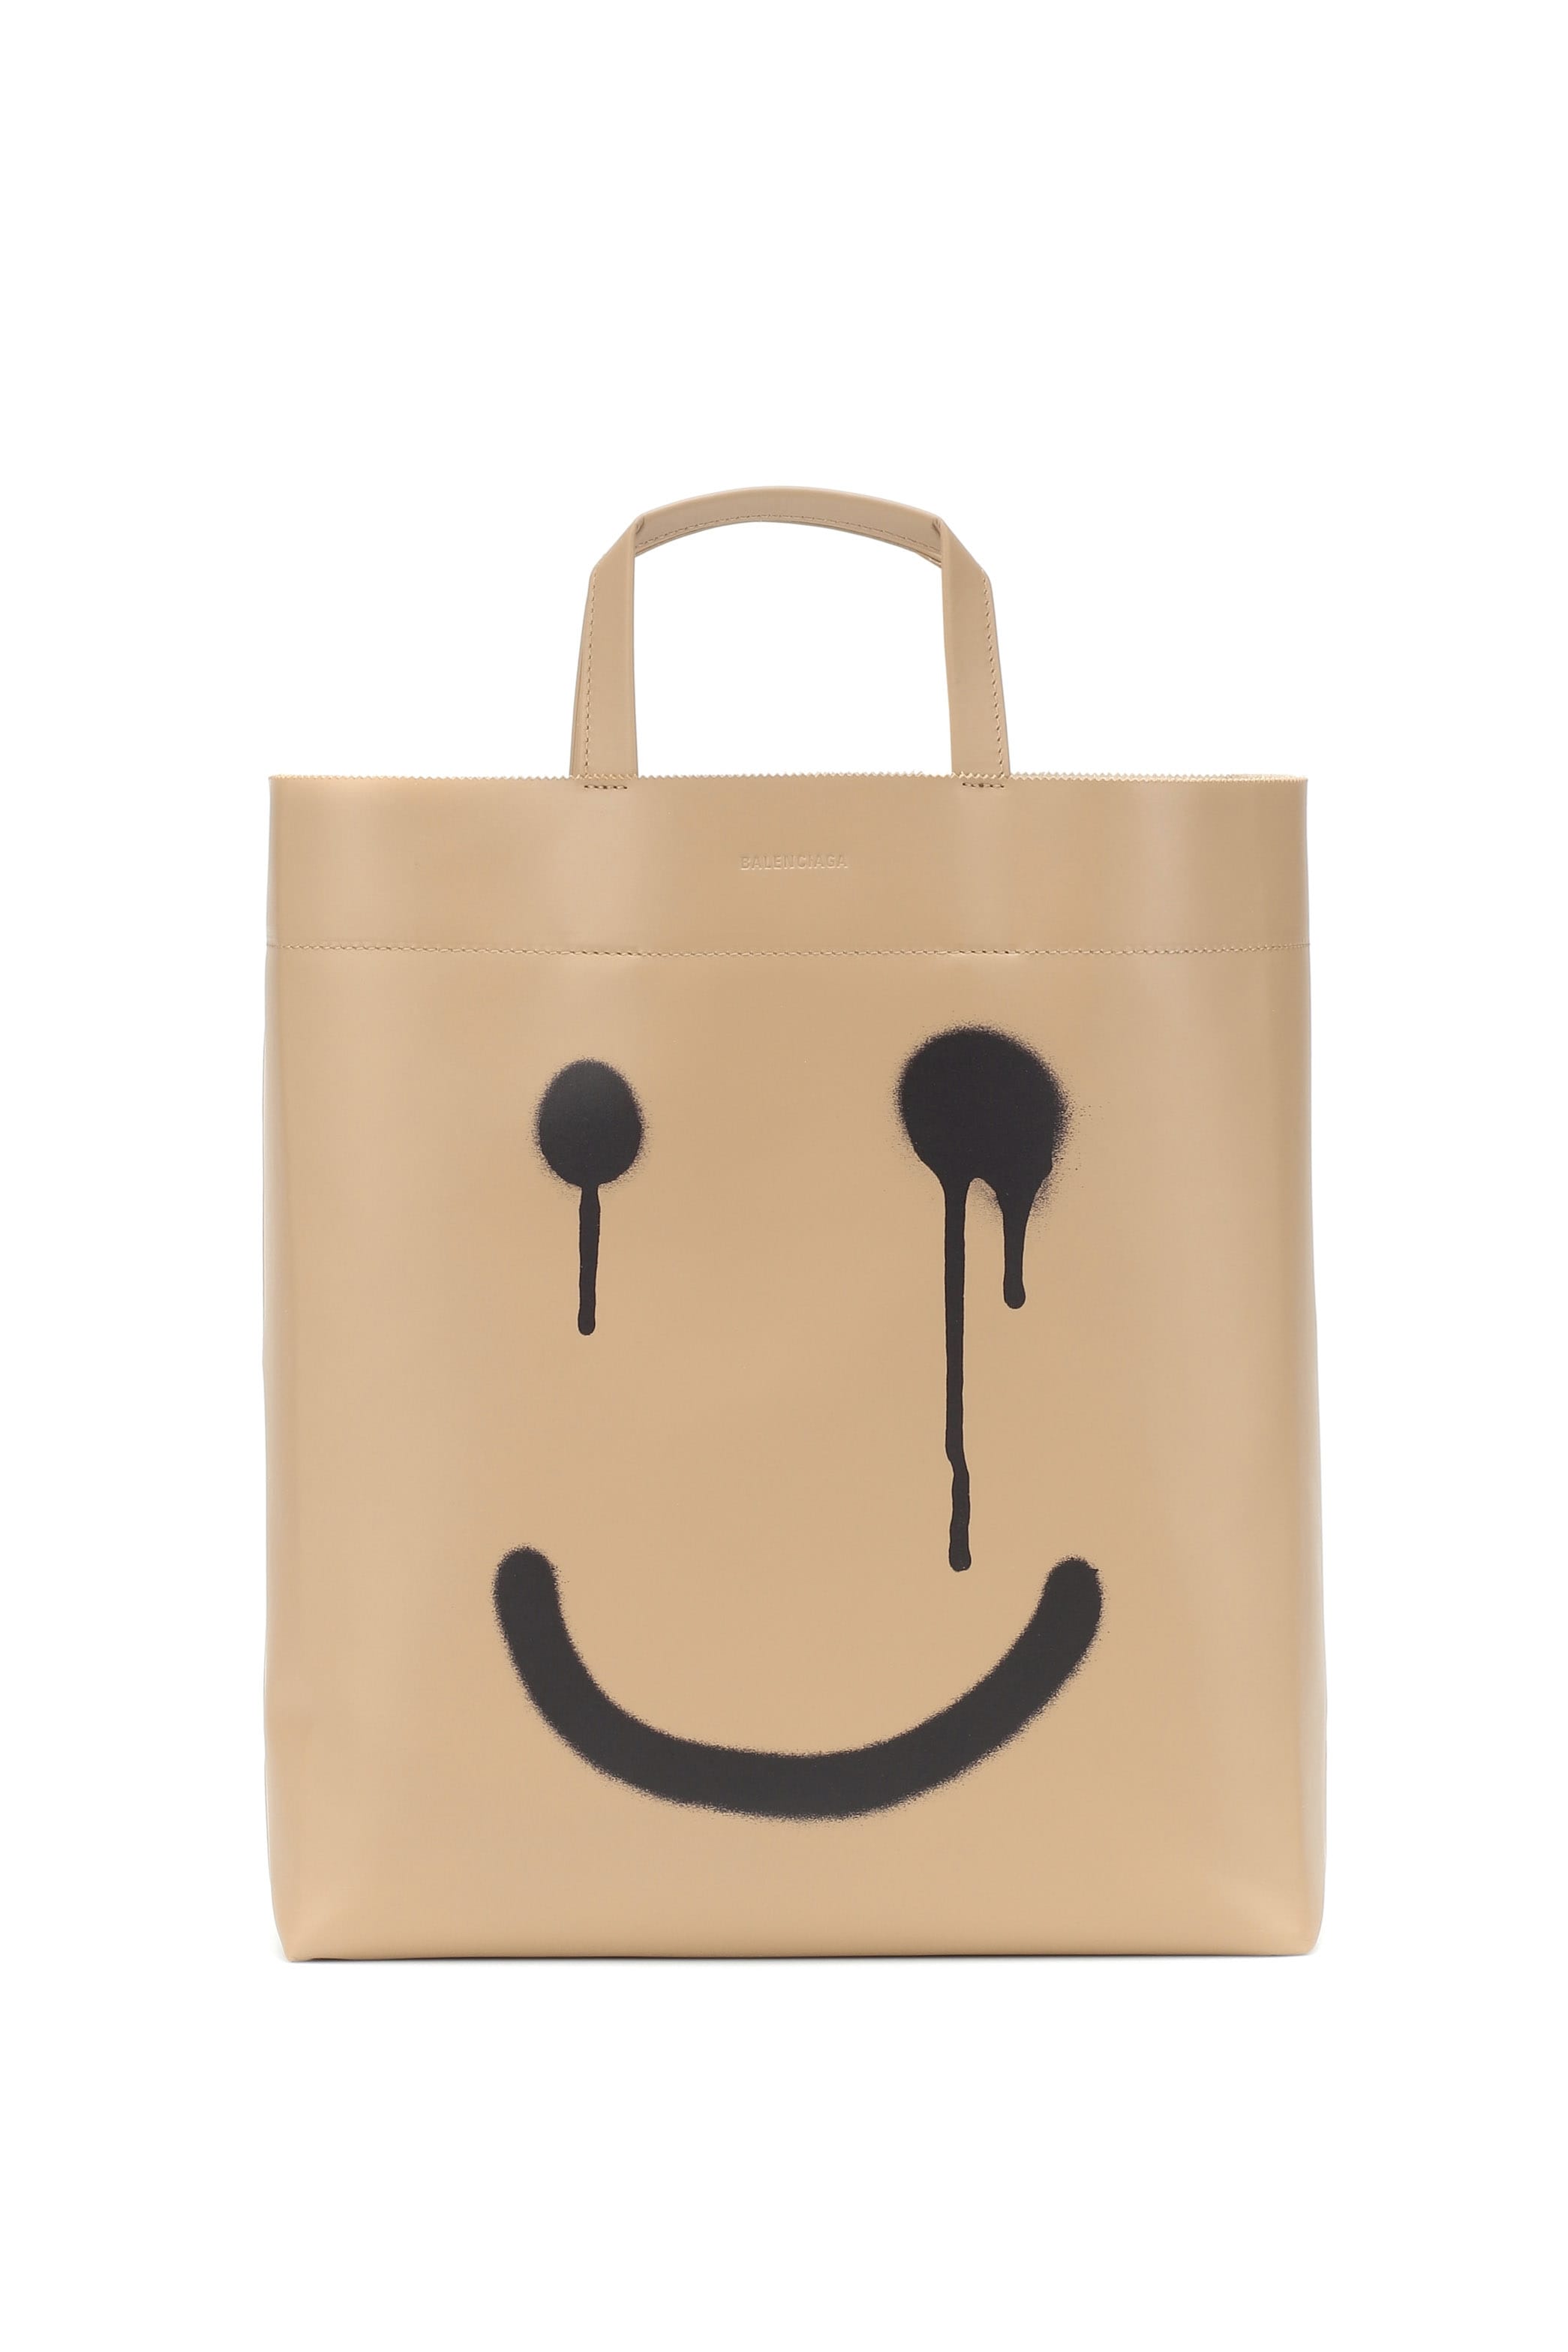 New Balenciaga paper shopping bag | Balenciaga, Paper shopping bag, Bags